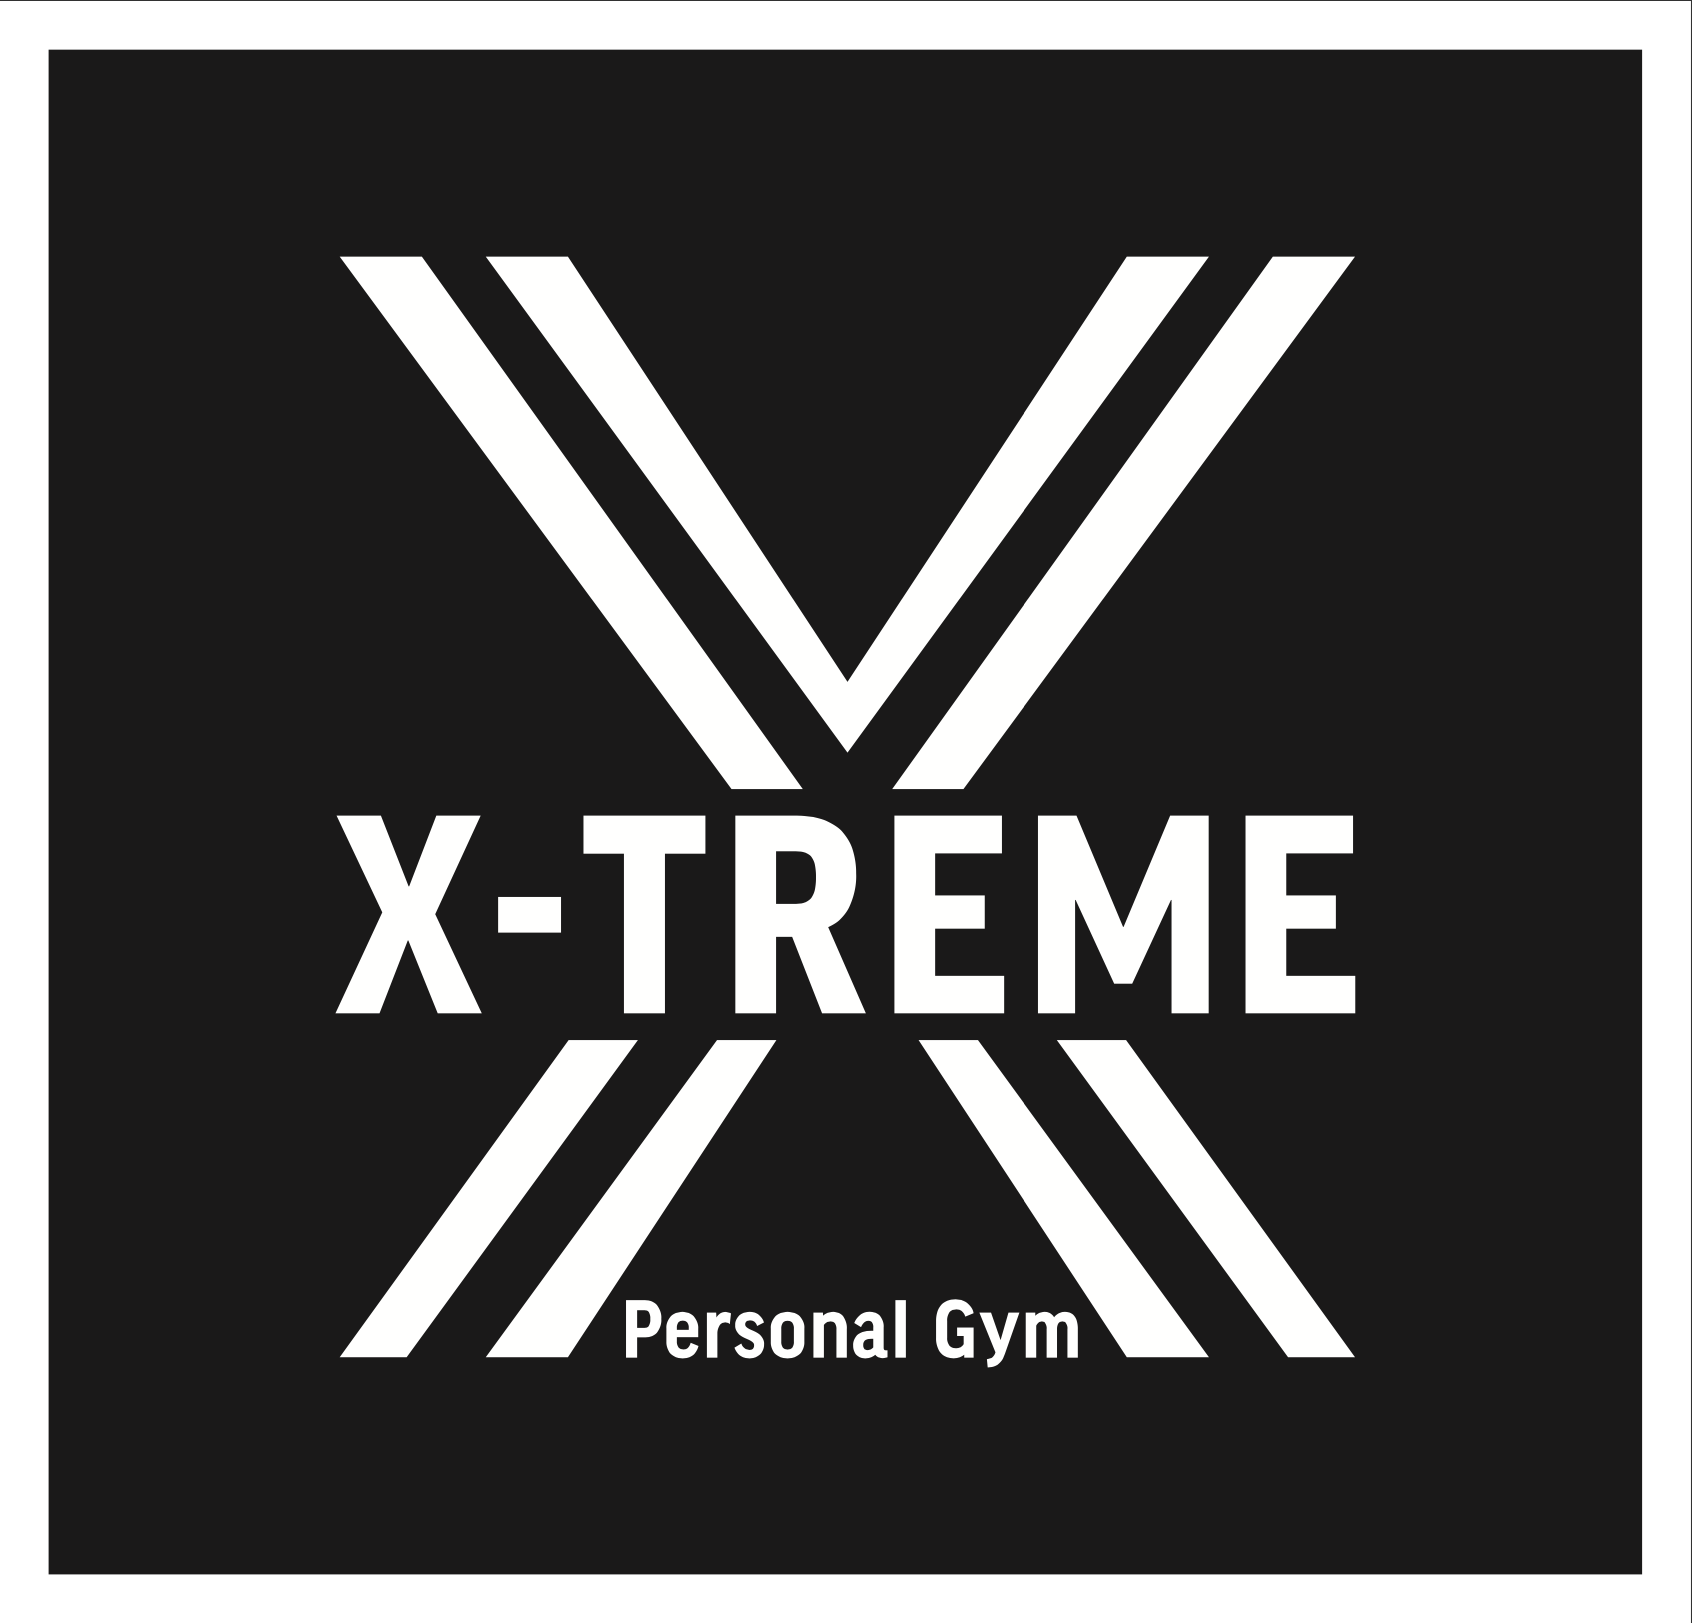 X-TREME Personal Gym – 【都度払い、業界最安値1セッション税込4.800円】